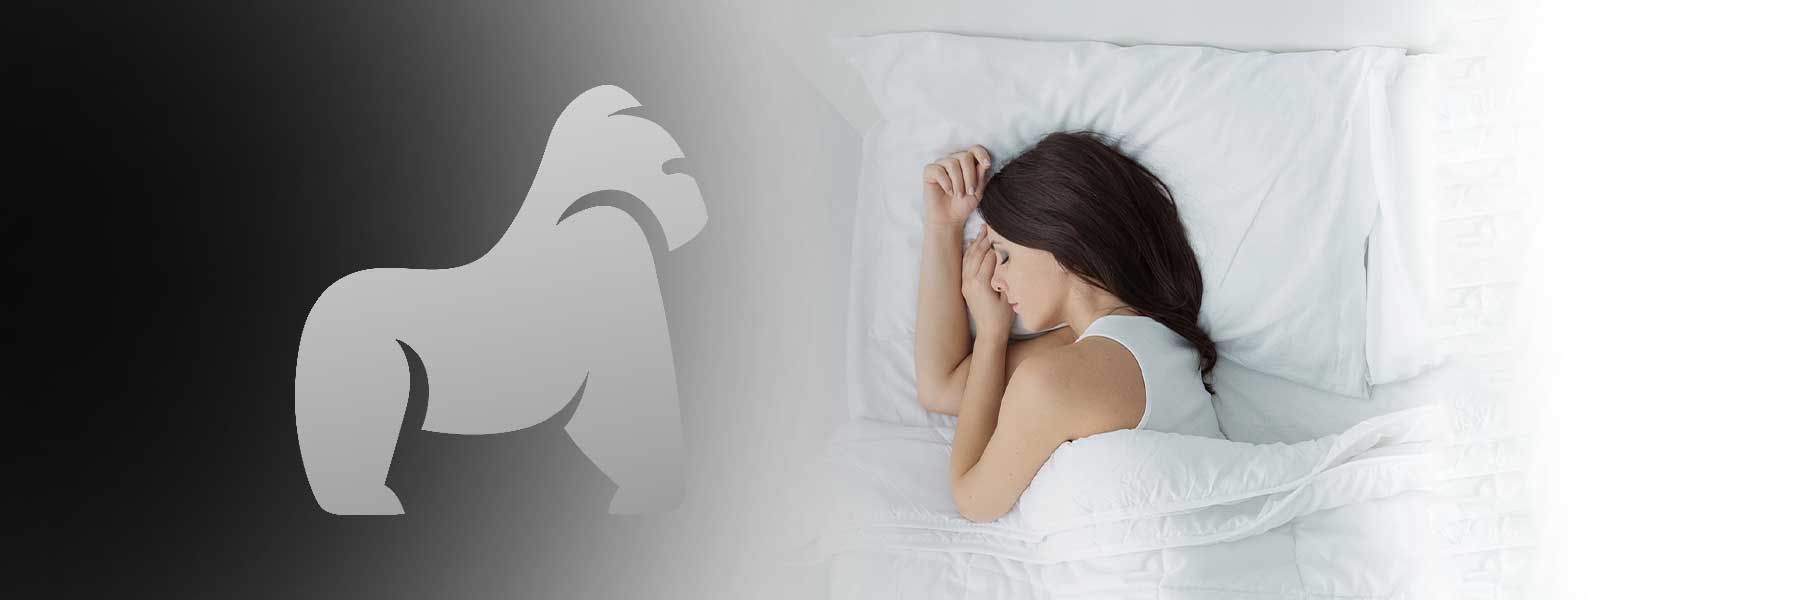 Nackenkissen für Seitenschläfer - Perfekte Unterstützung für traumhaften Schlaf